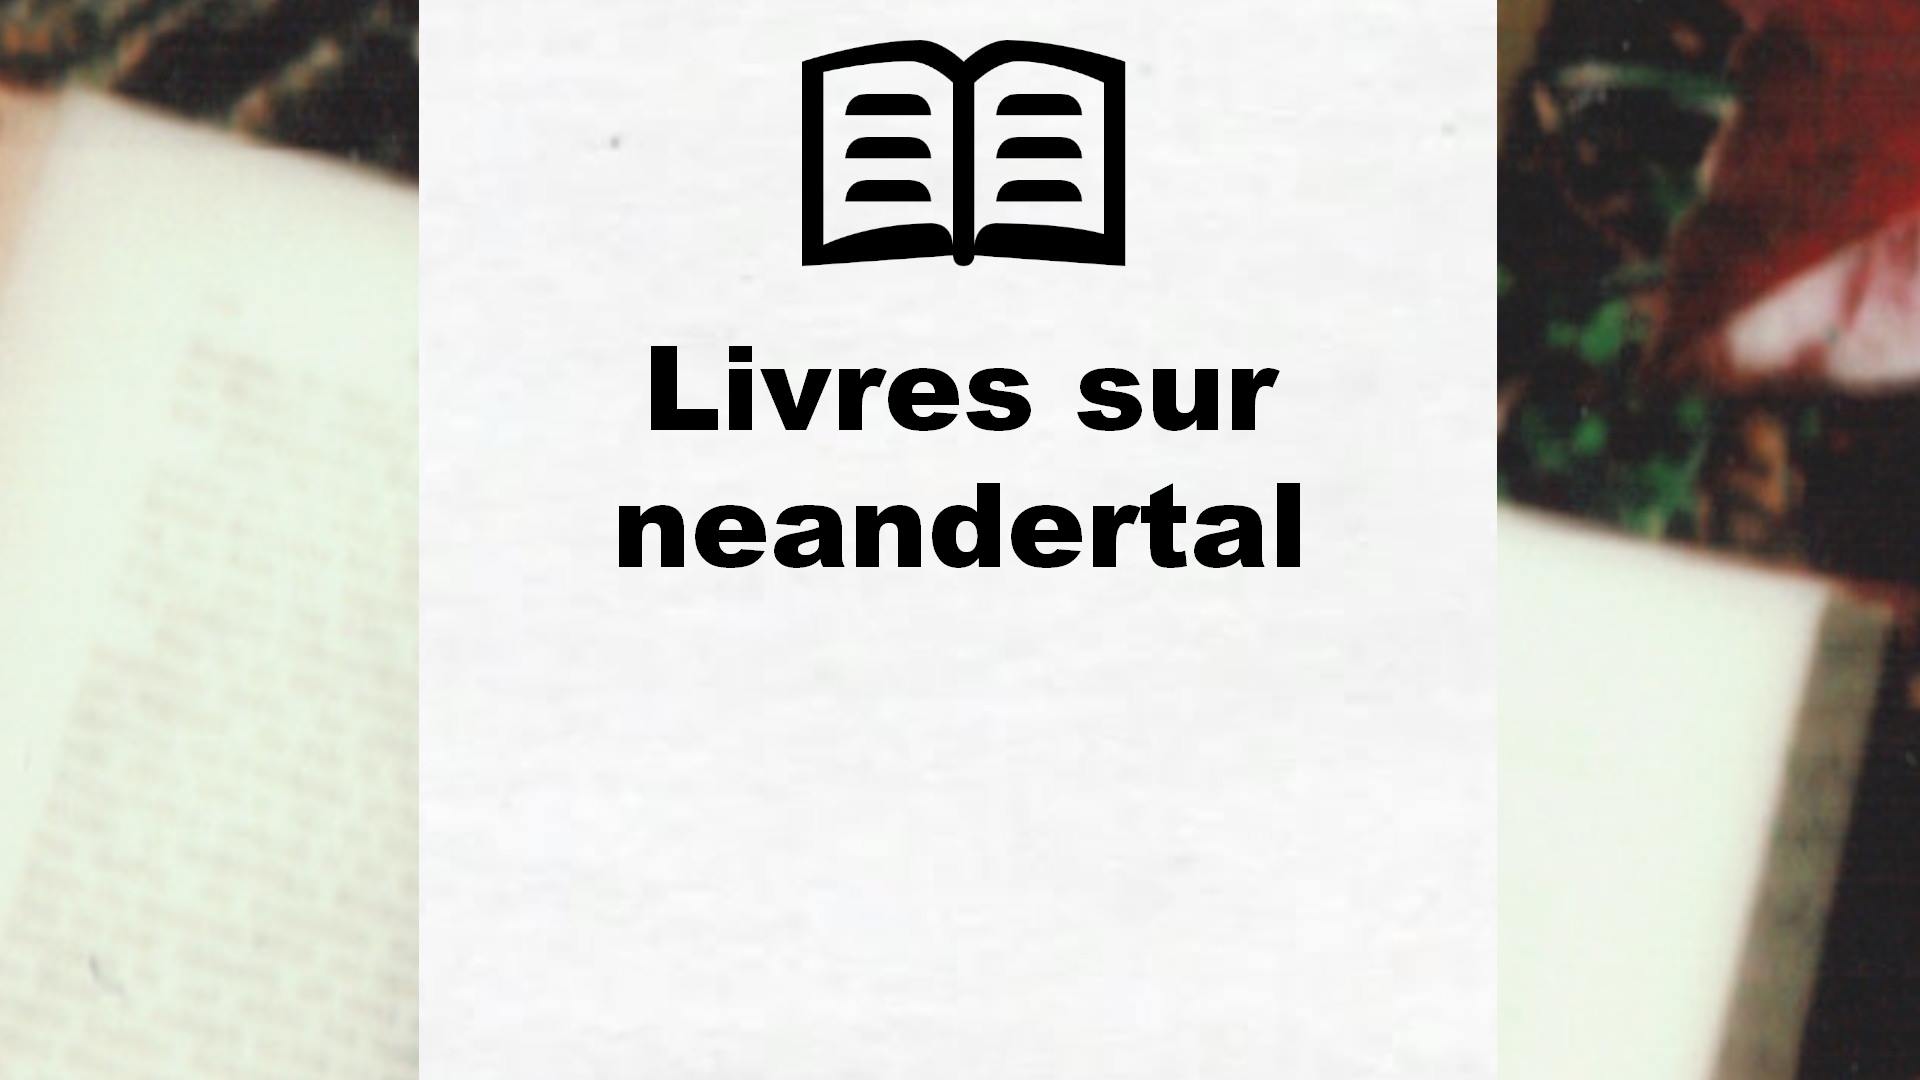 Livres sur neandertal